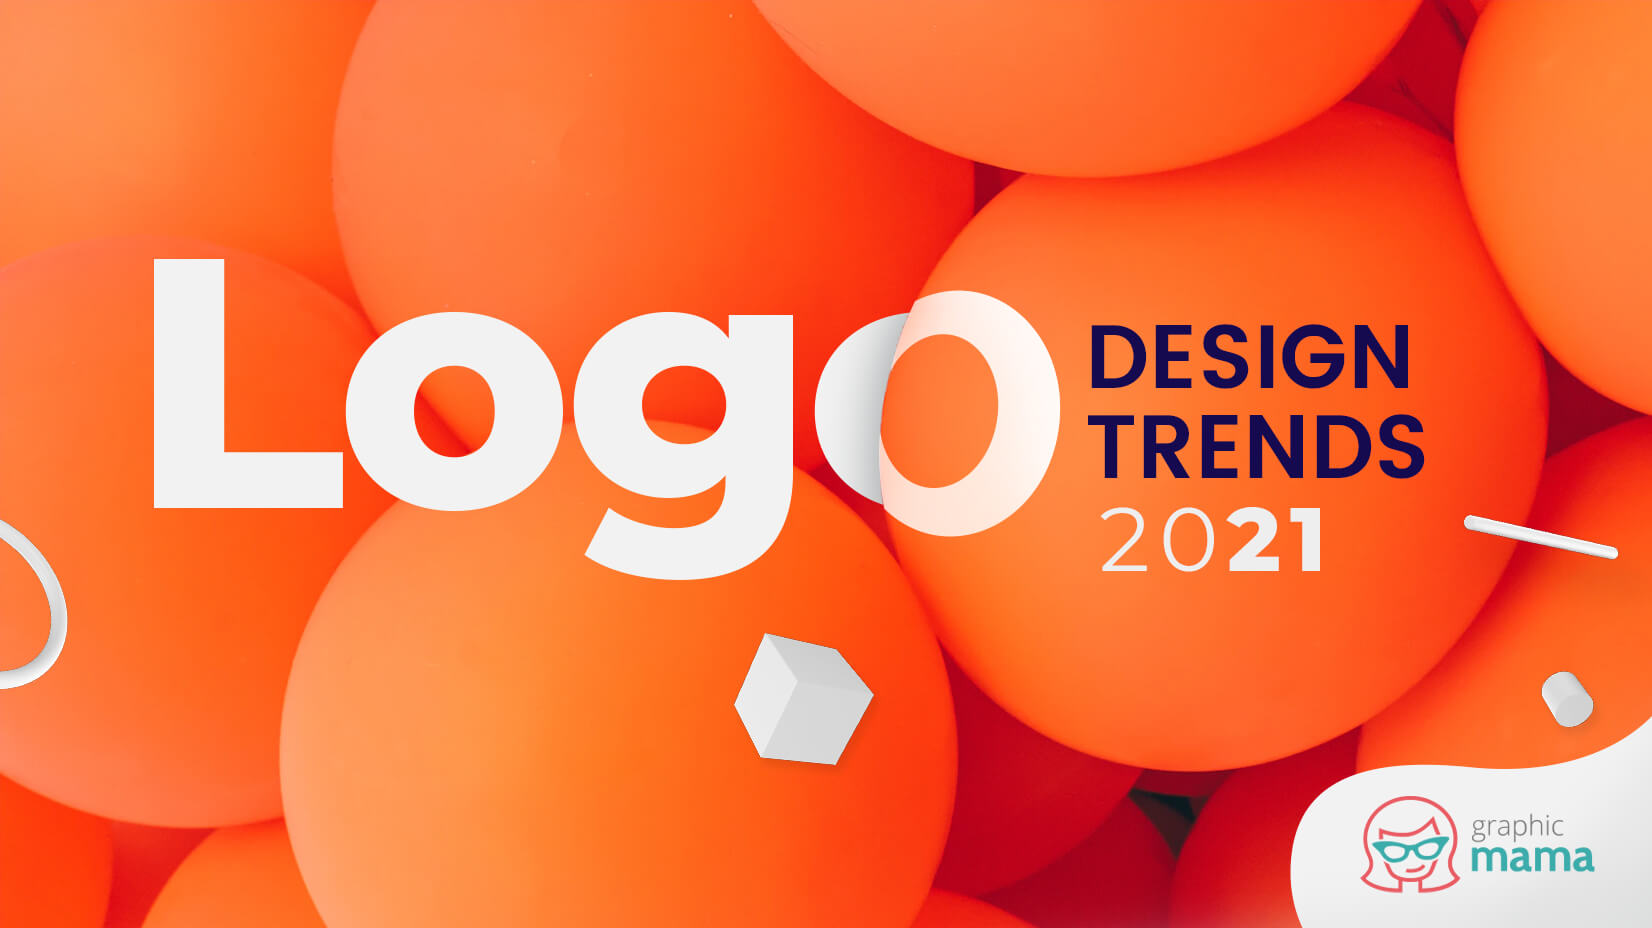 2021年に流行するロゴデザインの最新トレンド11個まとめ | Web Design Trends